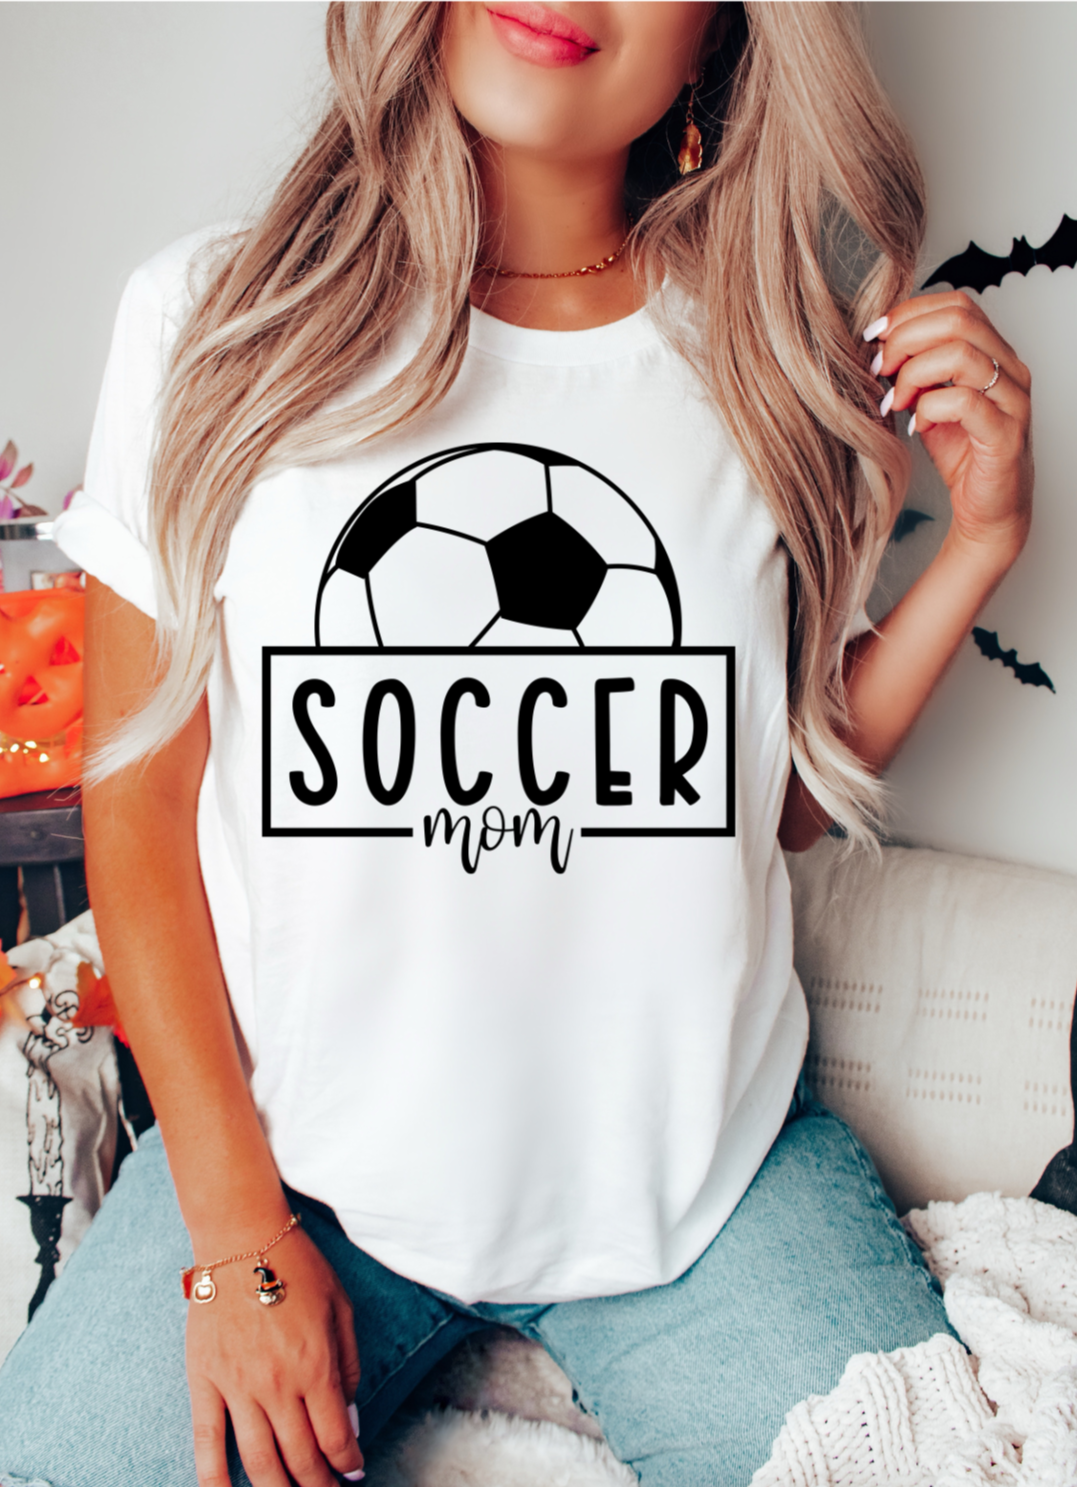 Soccer mom “dtf transfer”